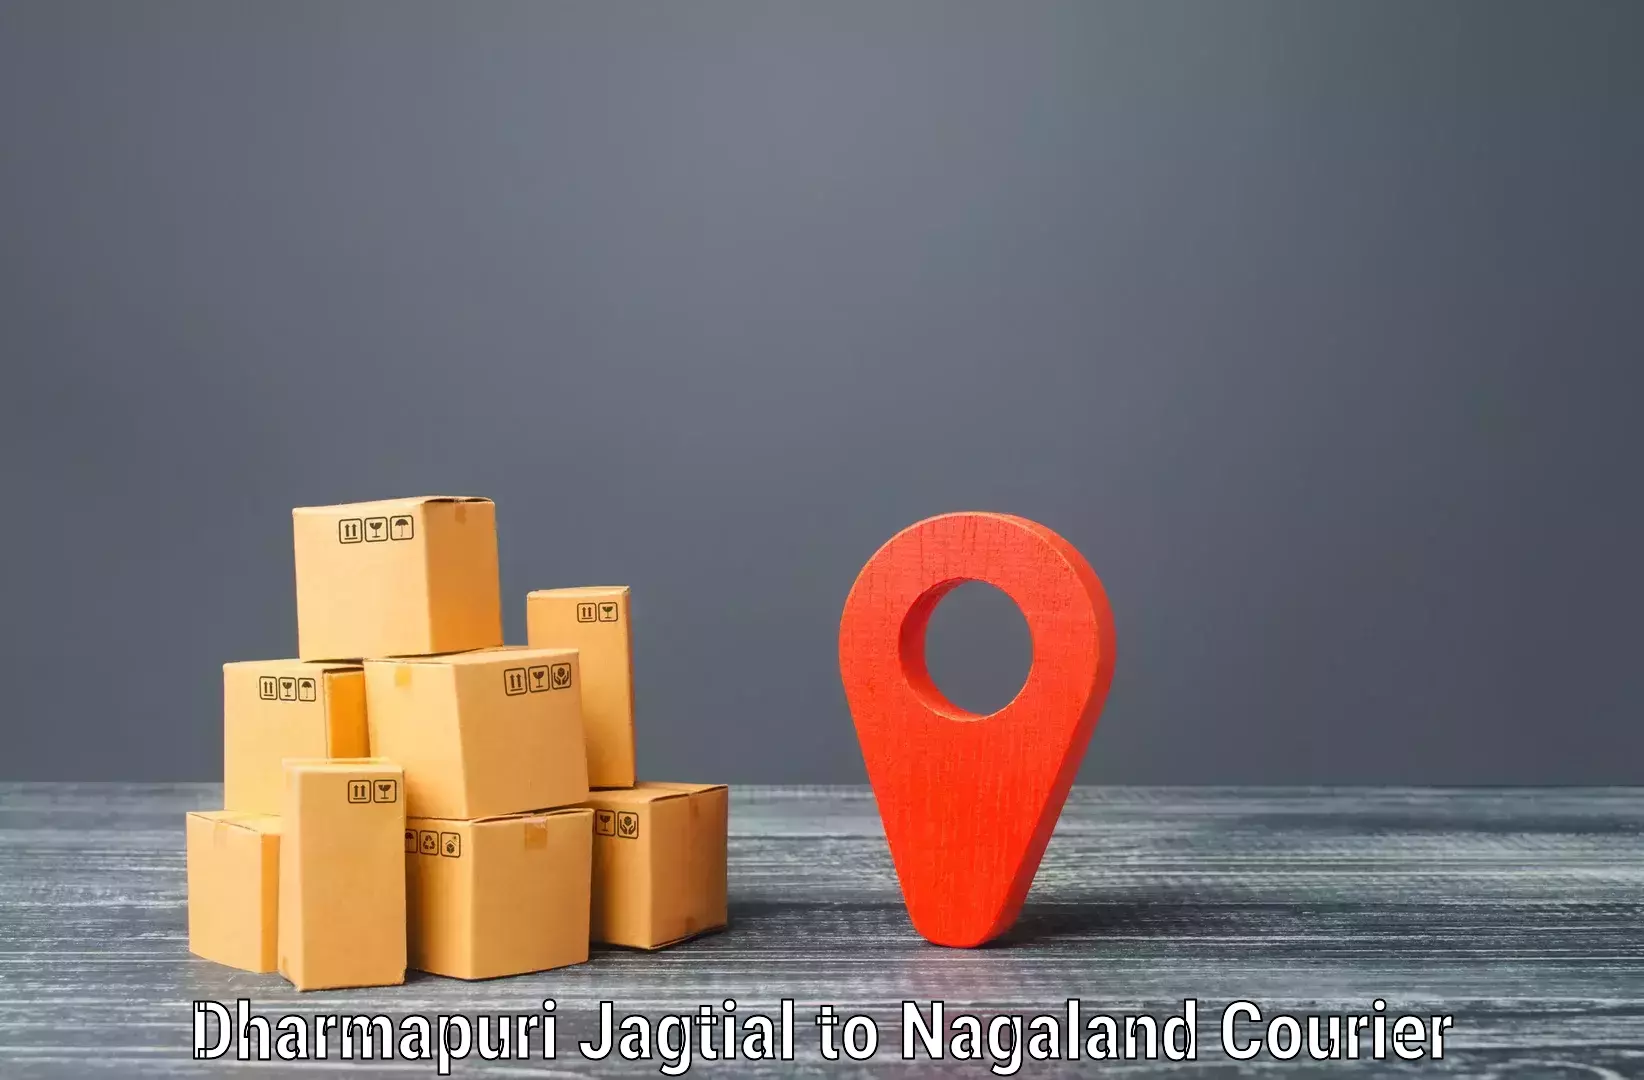 Cash on delivery service Dharmapuri Jagtial to Phek